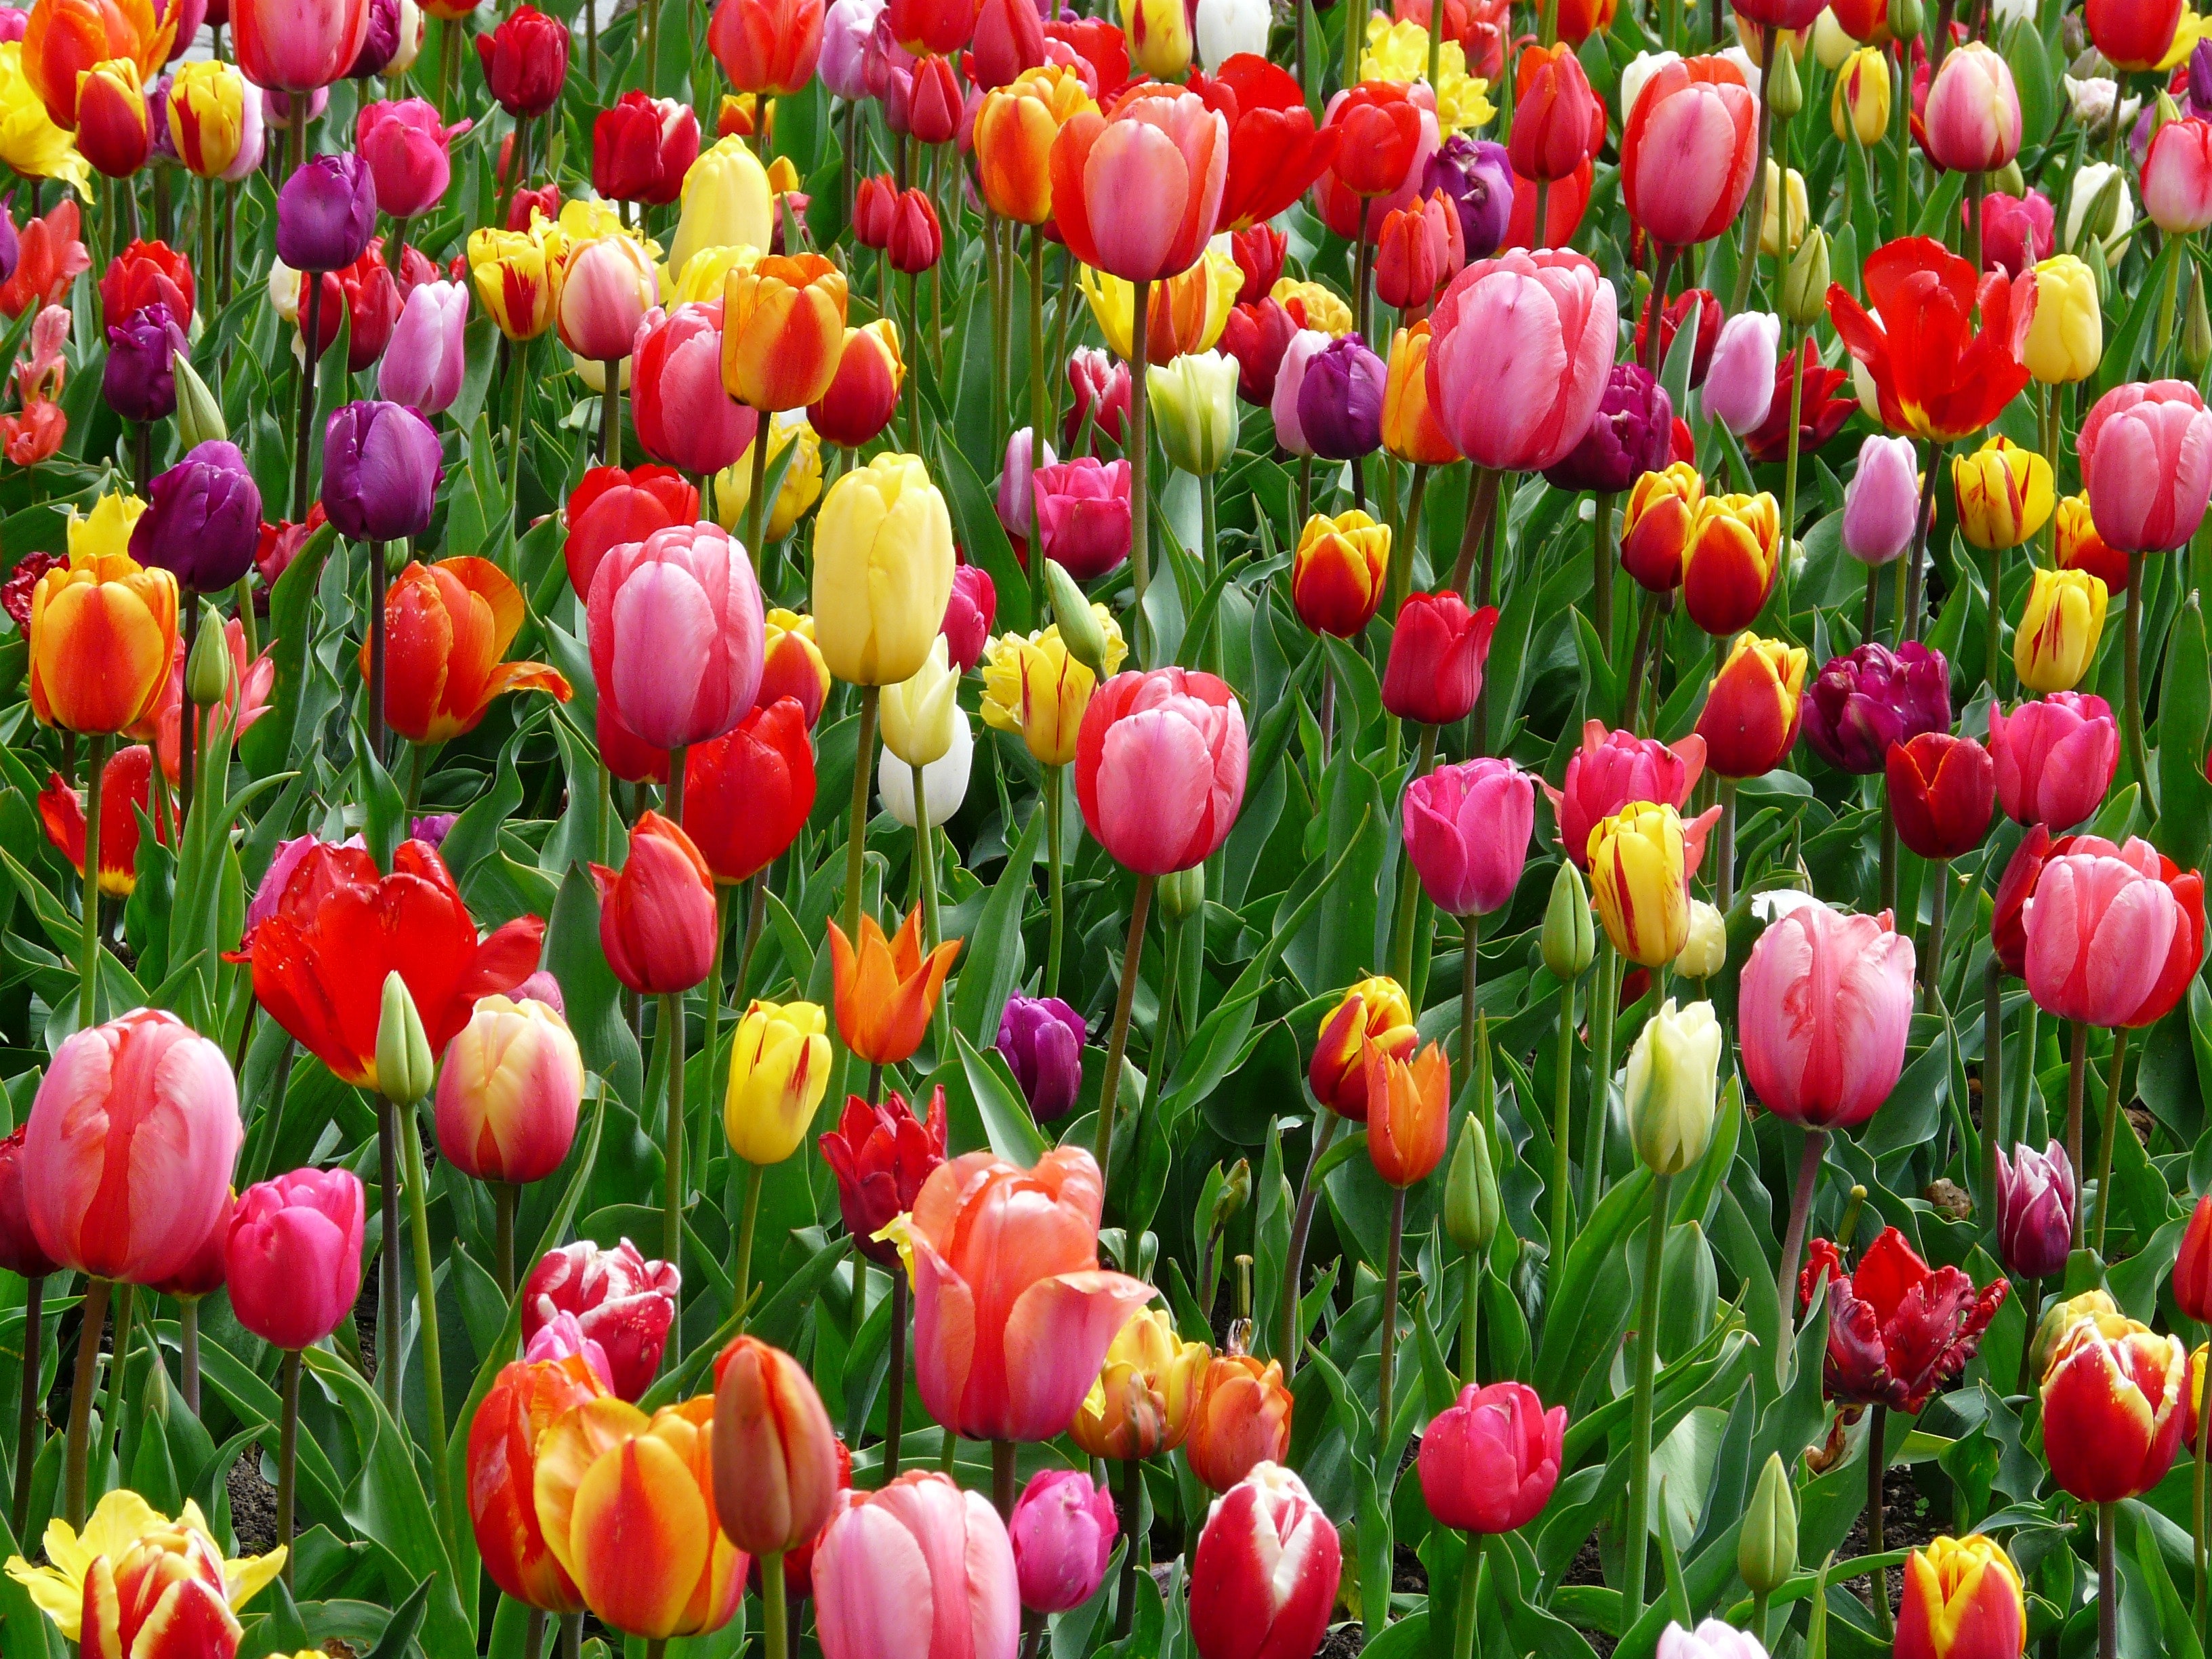 Spring Color Background